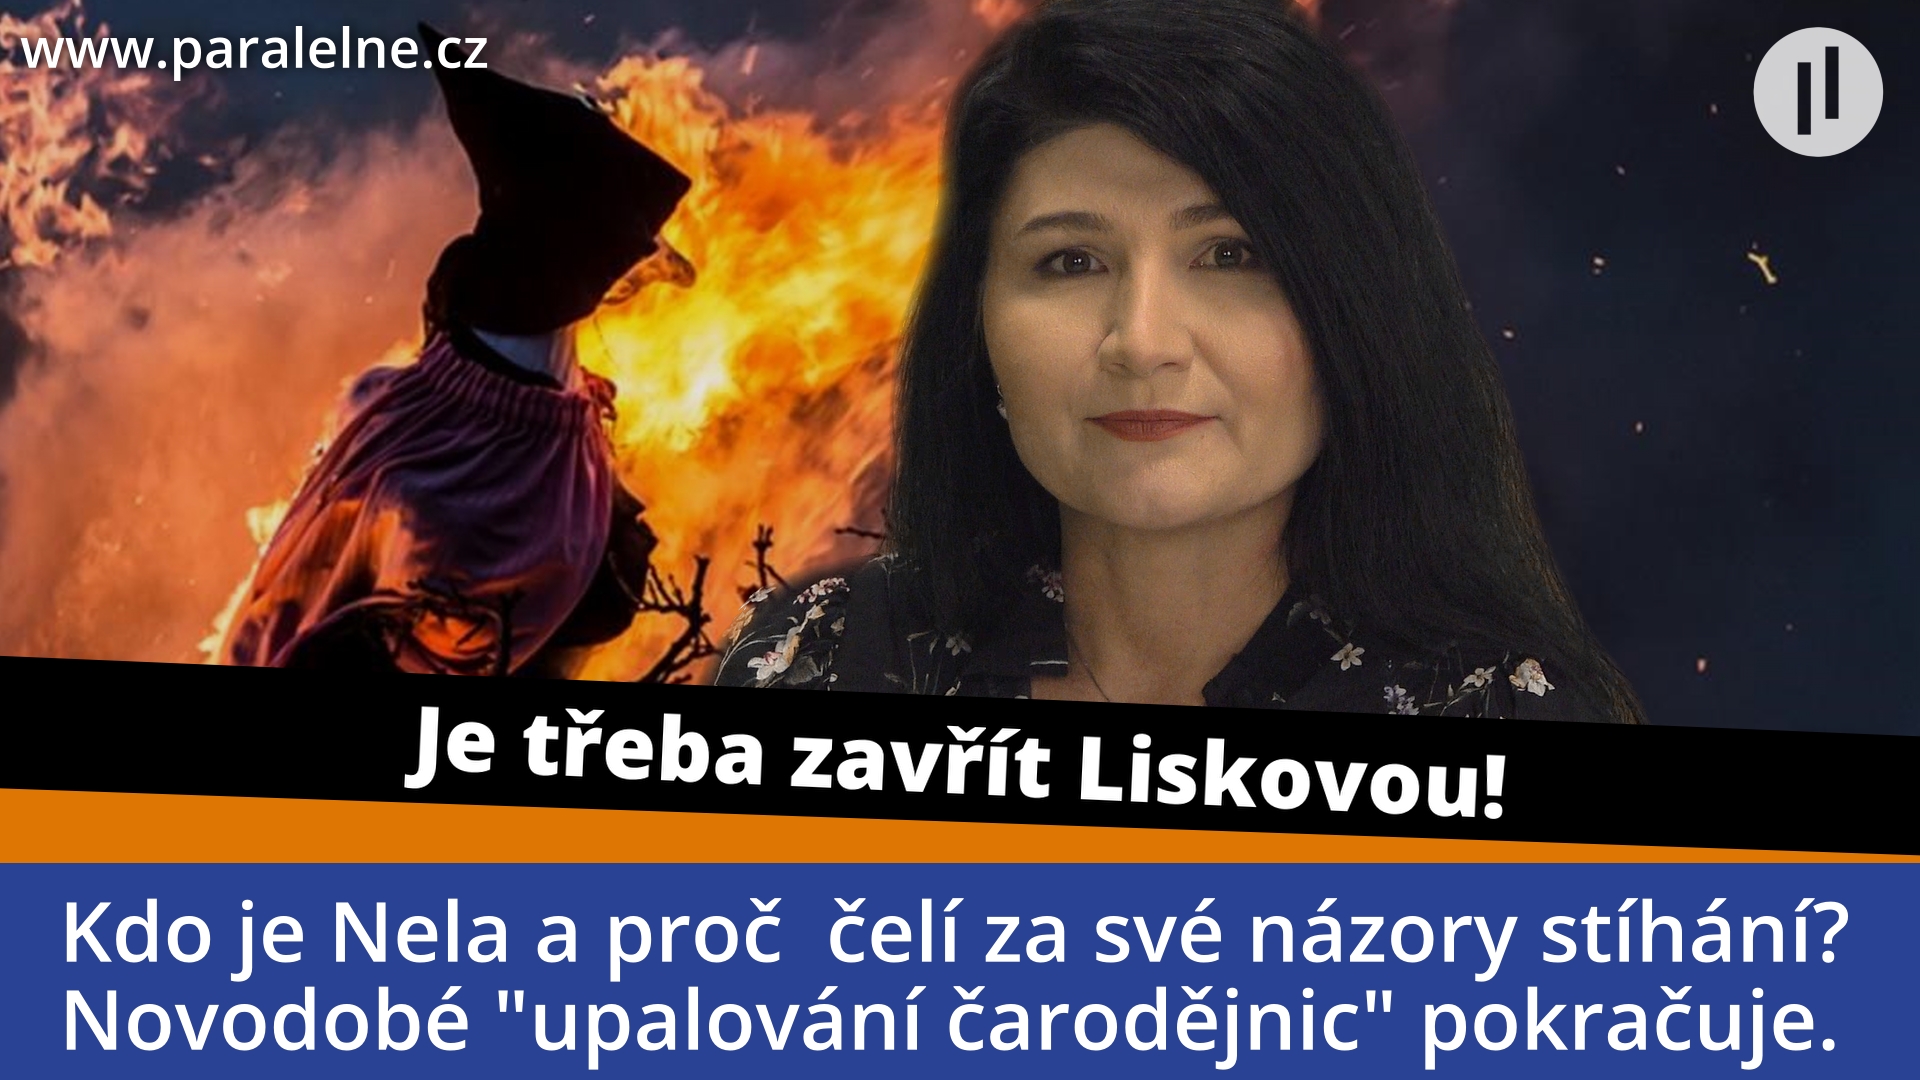 Zažila válku na Donbasu a odmítá lži politiků. Bude Nela Lísková za svou pravdu „upálena“?